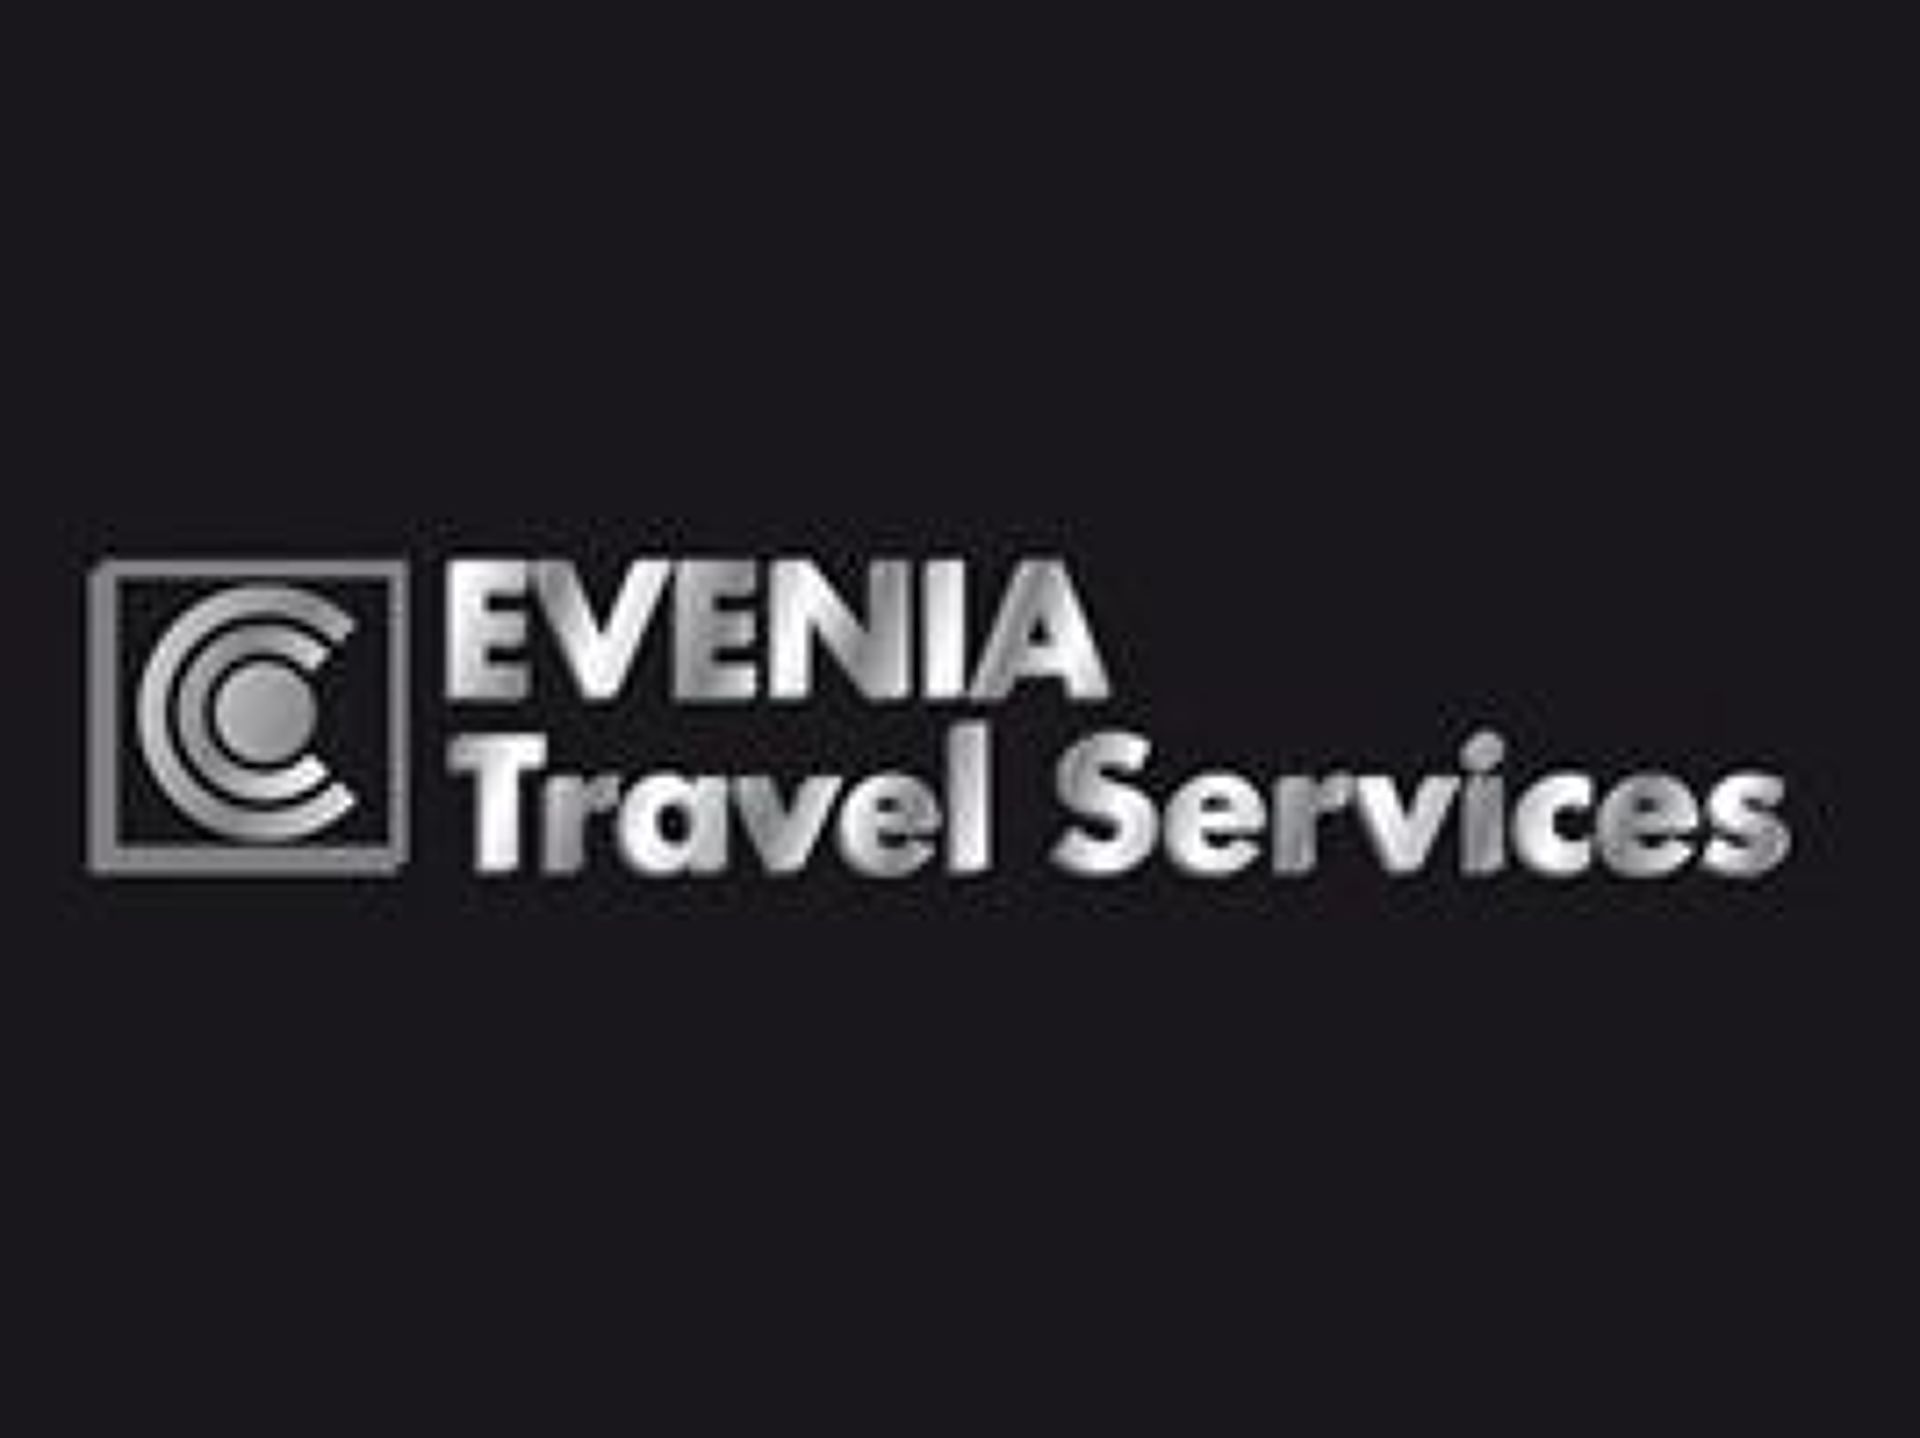 Evenia Travel Services